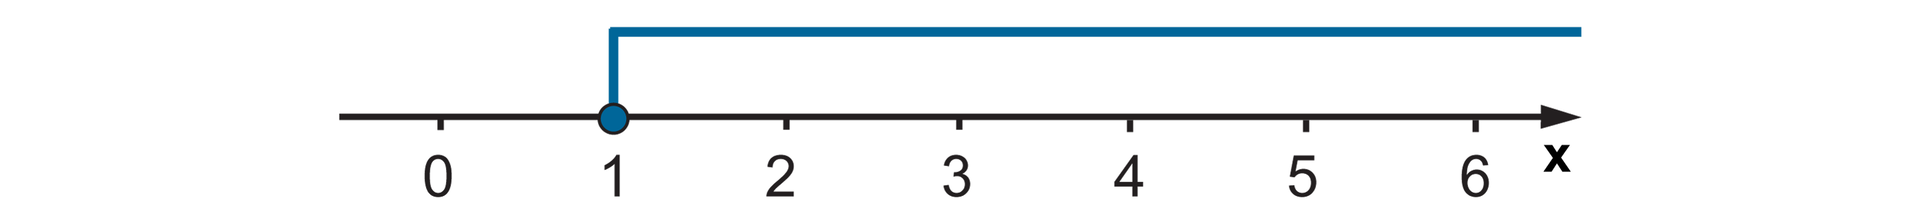 Na rysunku widać oś liczbową od 0 do 6 z podziałką co jeden. Zaznaczony jest przedział poziomą linią od 1 do nieskończoności. Liczba 1 zaznaczona jest zamalowanym kółkiem.